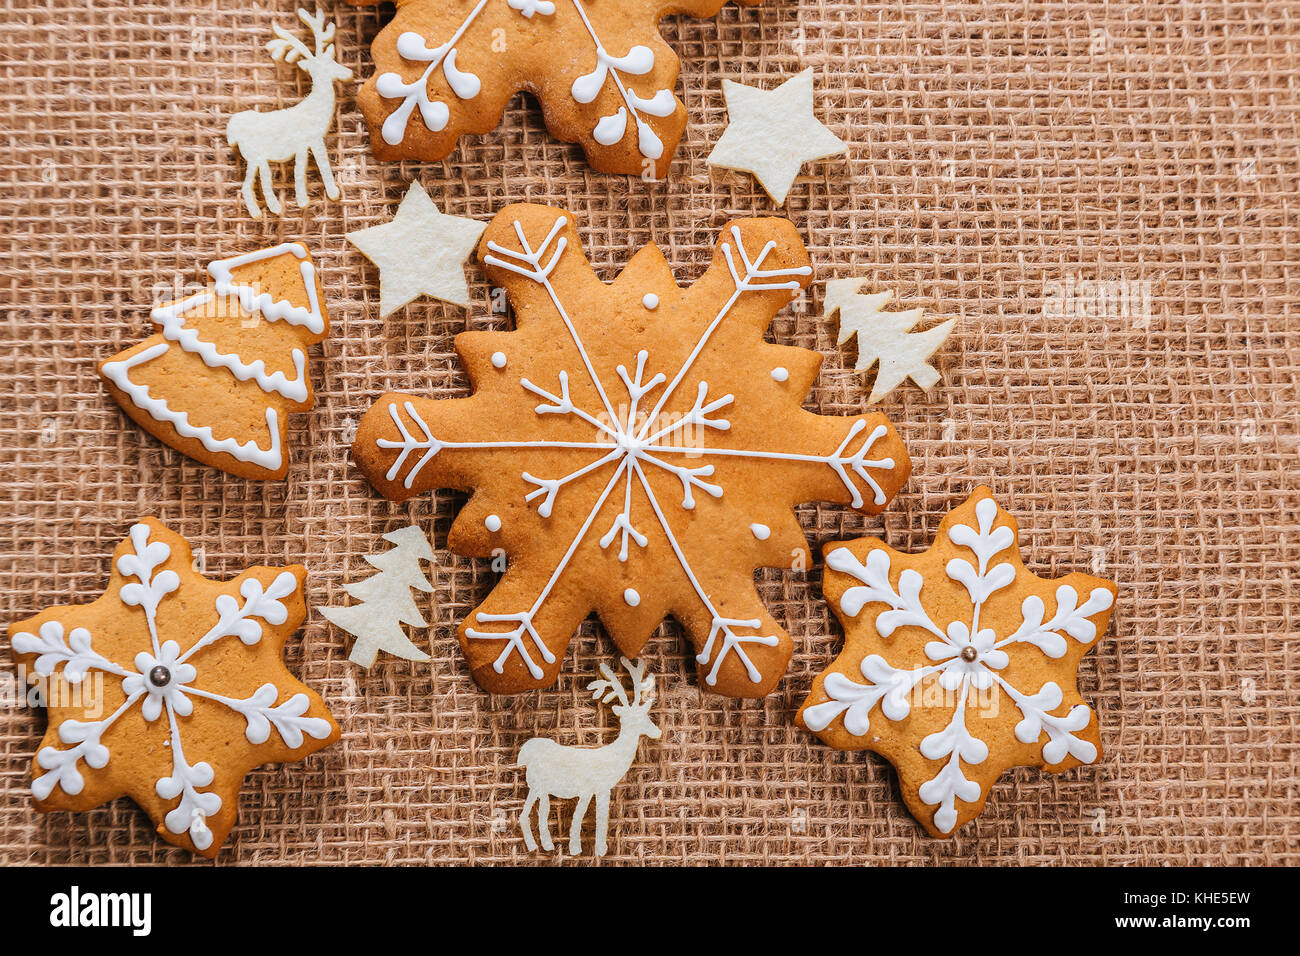 Weihnachtsbaum aus Lebkuchen cookies hausgemachte und neues Jahr Dekor auf sackleinen backgraund. frohe weihnachten Postkarte. freier Speicherplatz Stockfoto